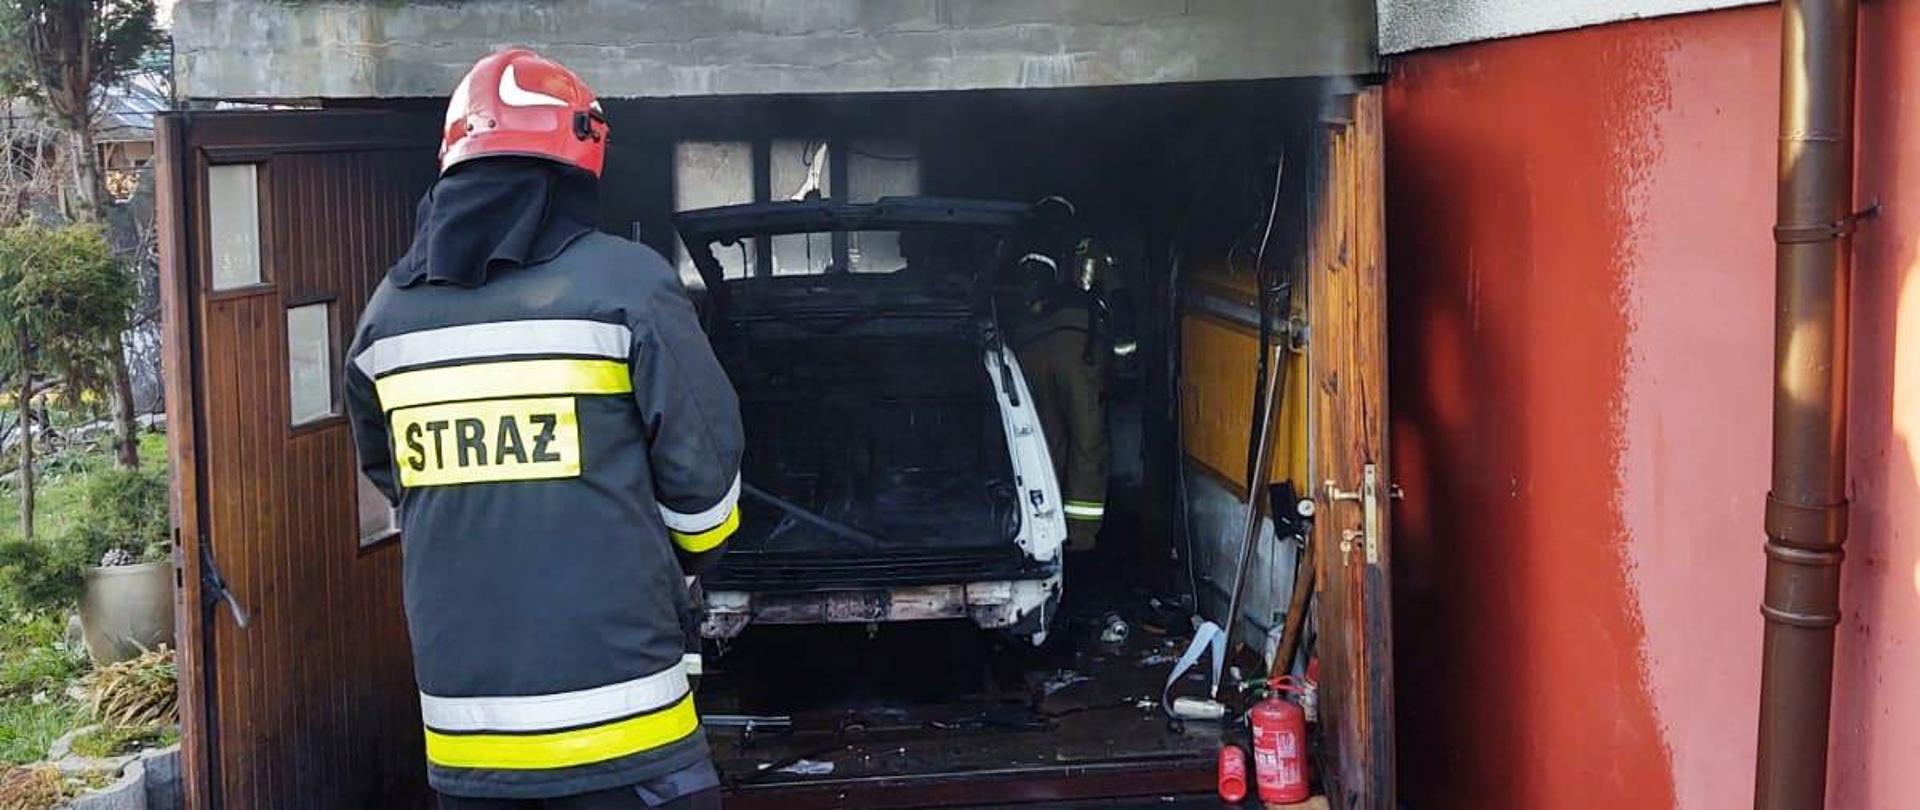 Widok garażu zlokalizowanego przy budynku mieszkalnym a w nim spalony samochód. Przed garażem stoi strażak uczestniczący w działaniach.